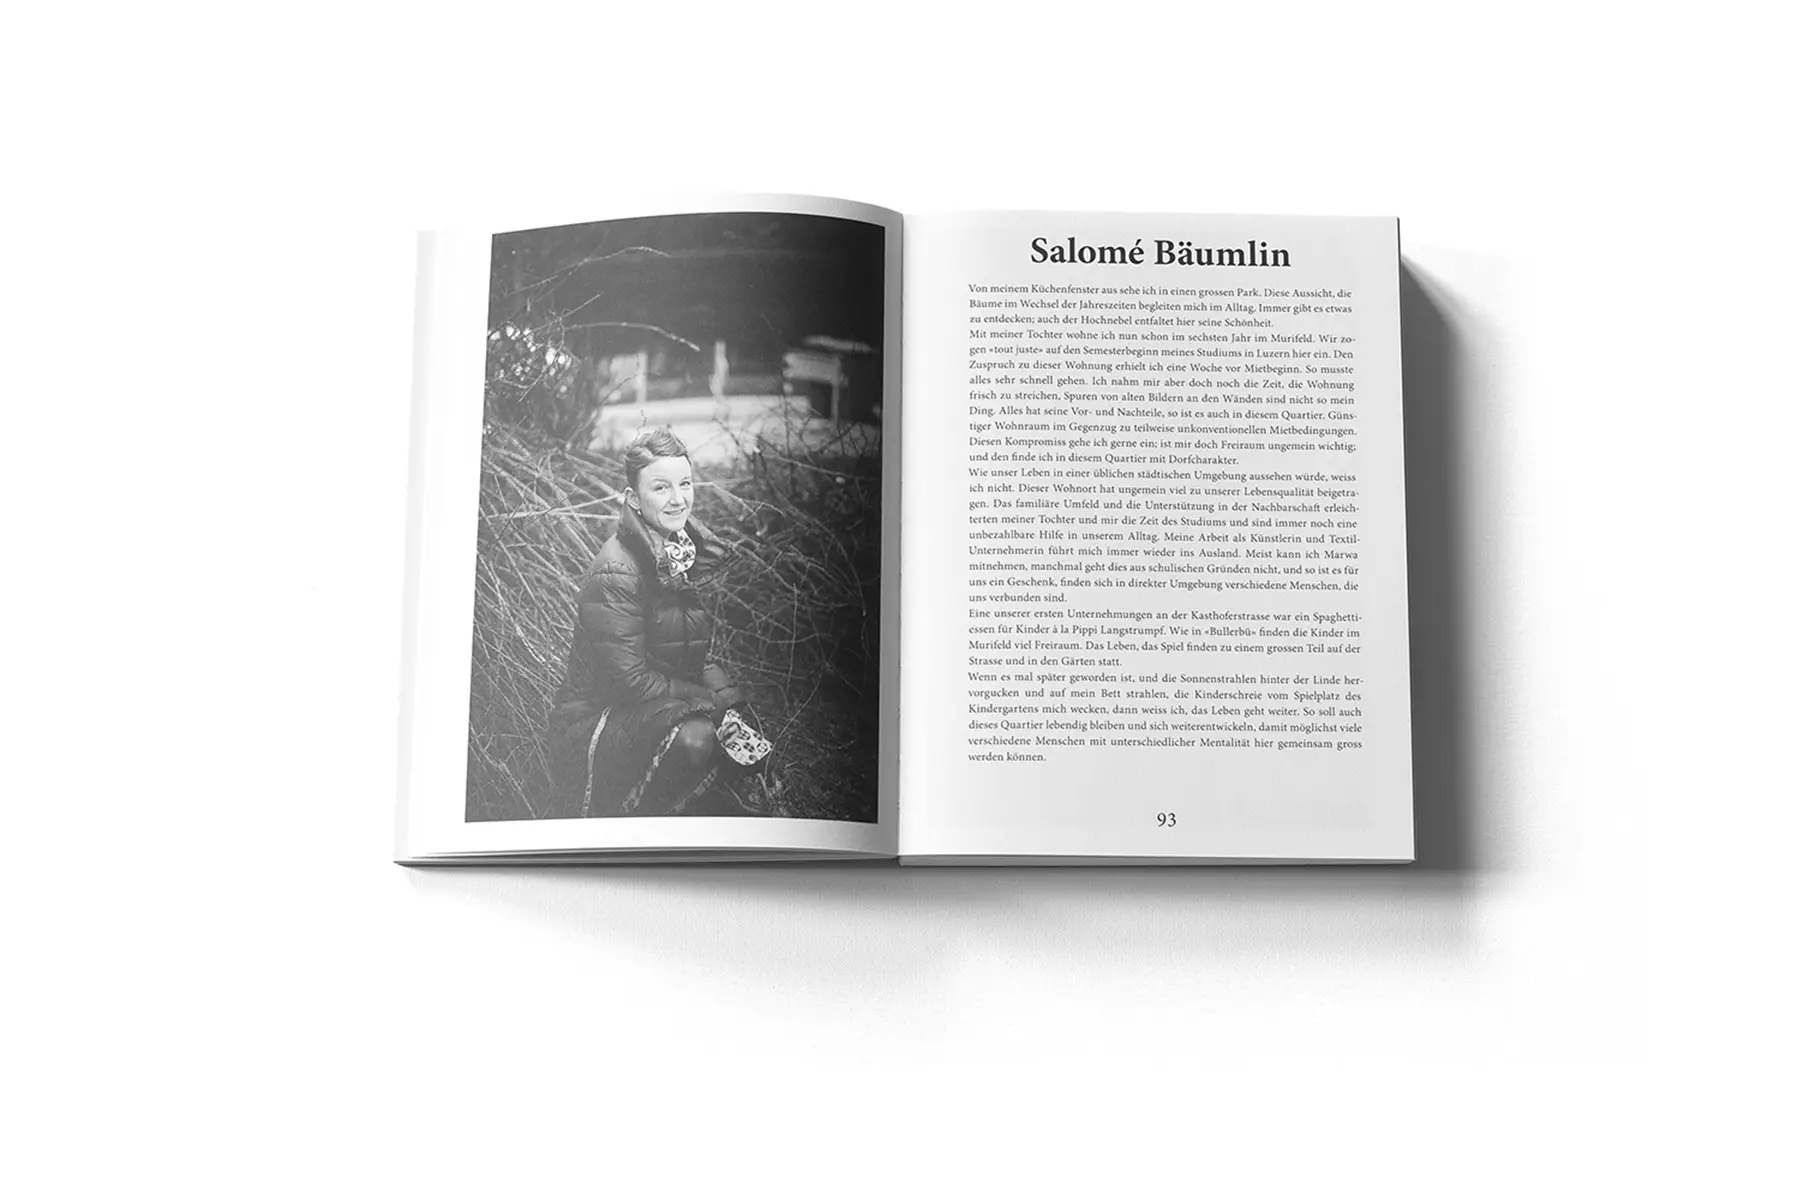 Murifeldbuch des Berner Grafikers Manuel Castellote, Buchteil mit Portäts von Menschen mit Quartierbezug, Künstlerin Salomé Bäumlin